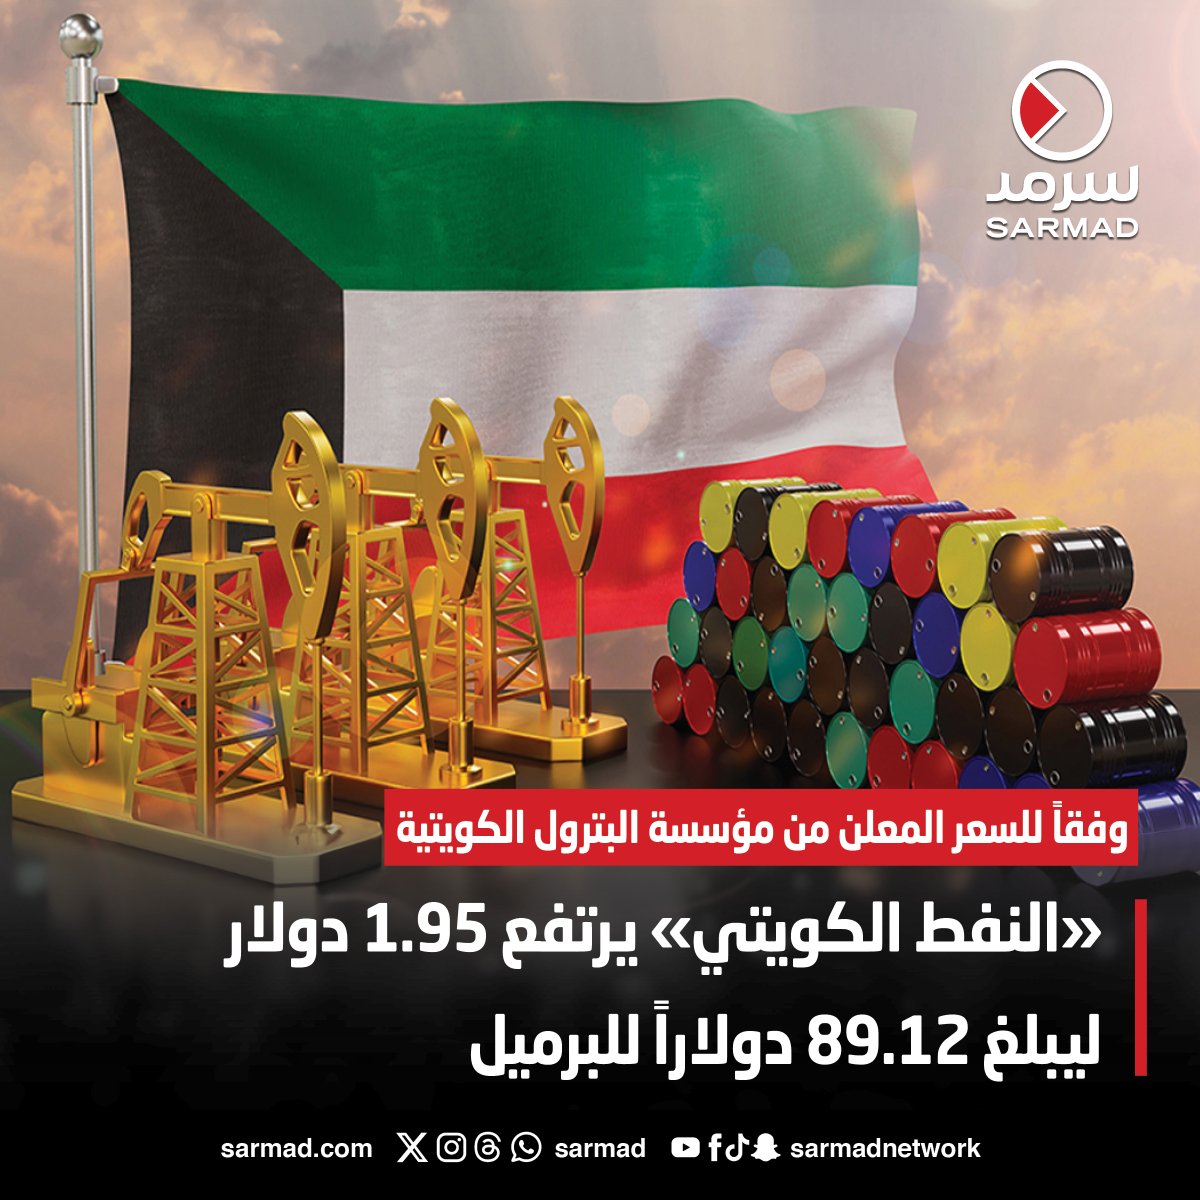 #النفط_الكويتي يرتفع 1.95 دولار ليبلغ 89.12 دولاراً للبرميل • وفقاً للسعر المعلن من مؤسسة البترول الكويتية sarmad.com/221676/